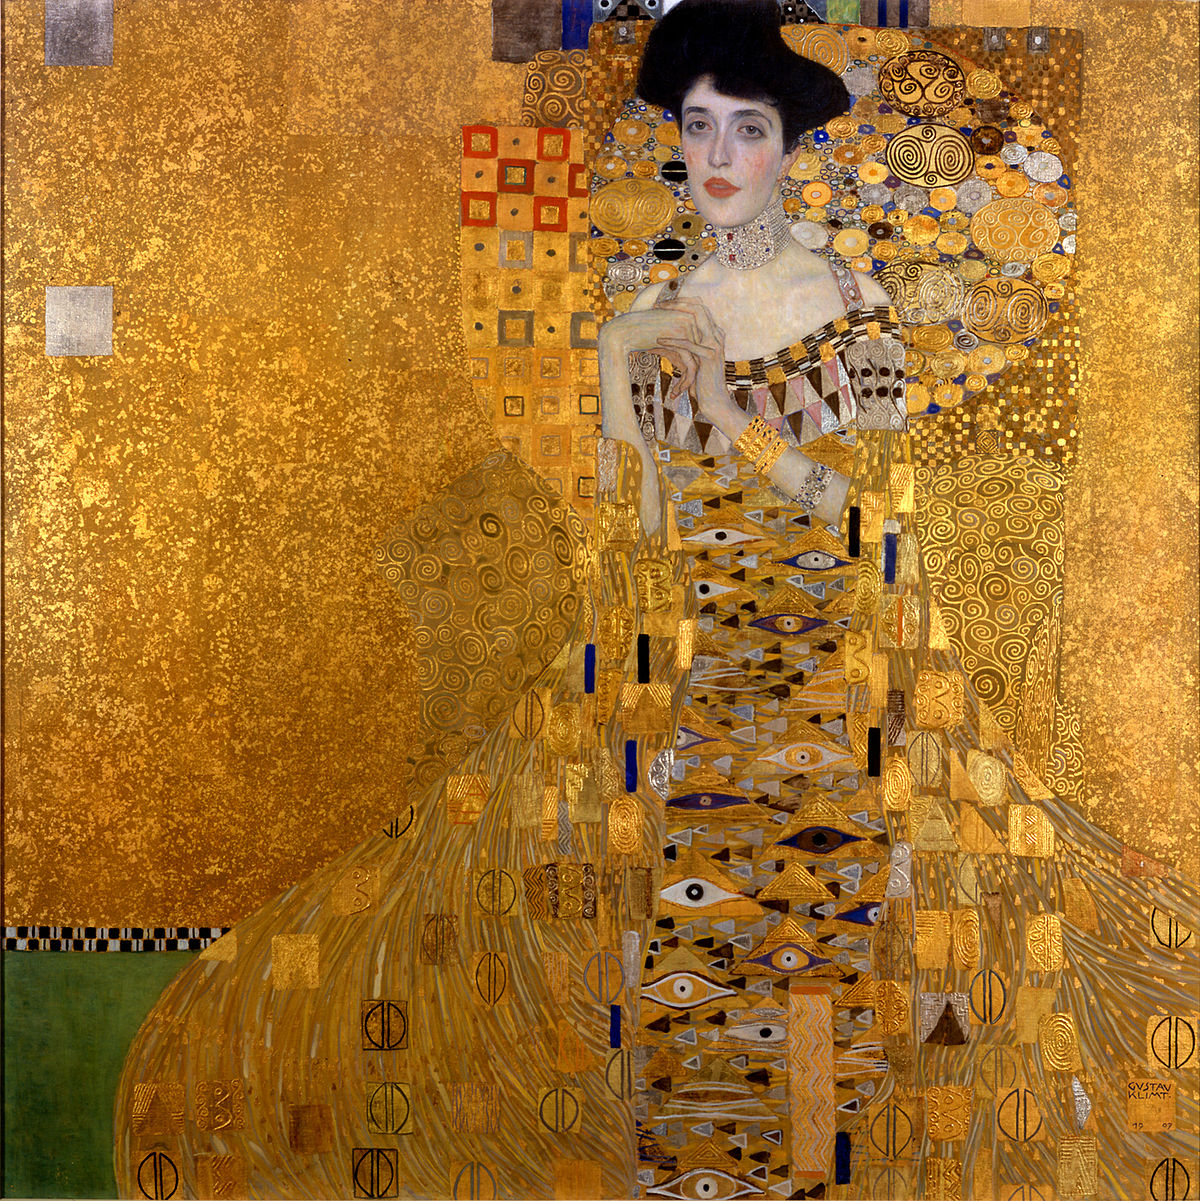 https://upload.wikimedia.org/wikipedia/commons/thumb/8/84/Gustav_Klimt_046.jpg/1200px-Gustav_Klimt_046.jpg